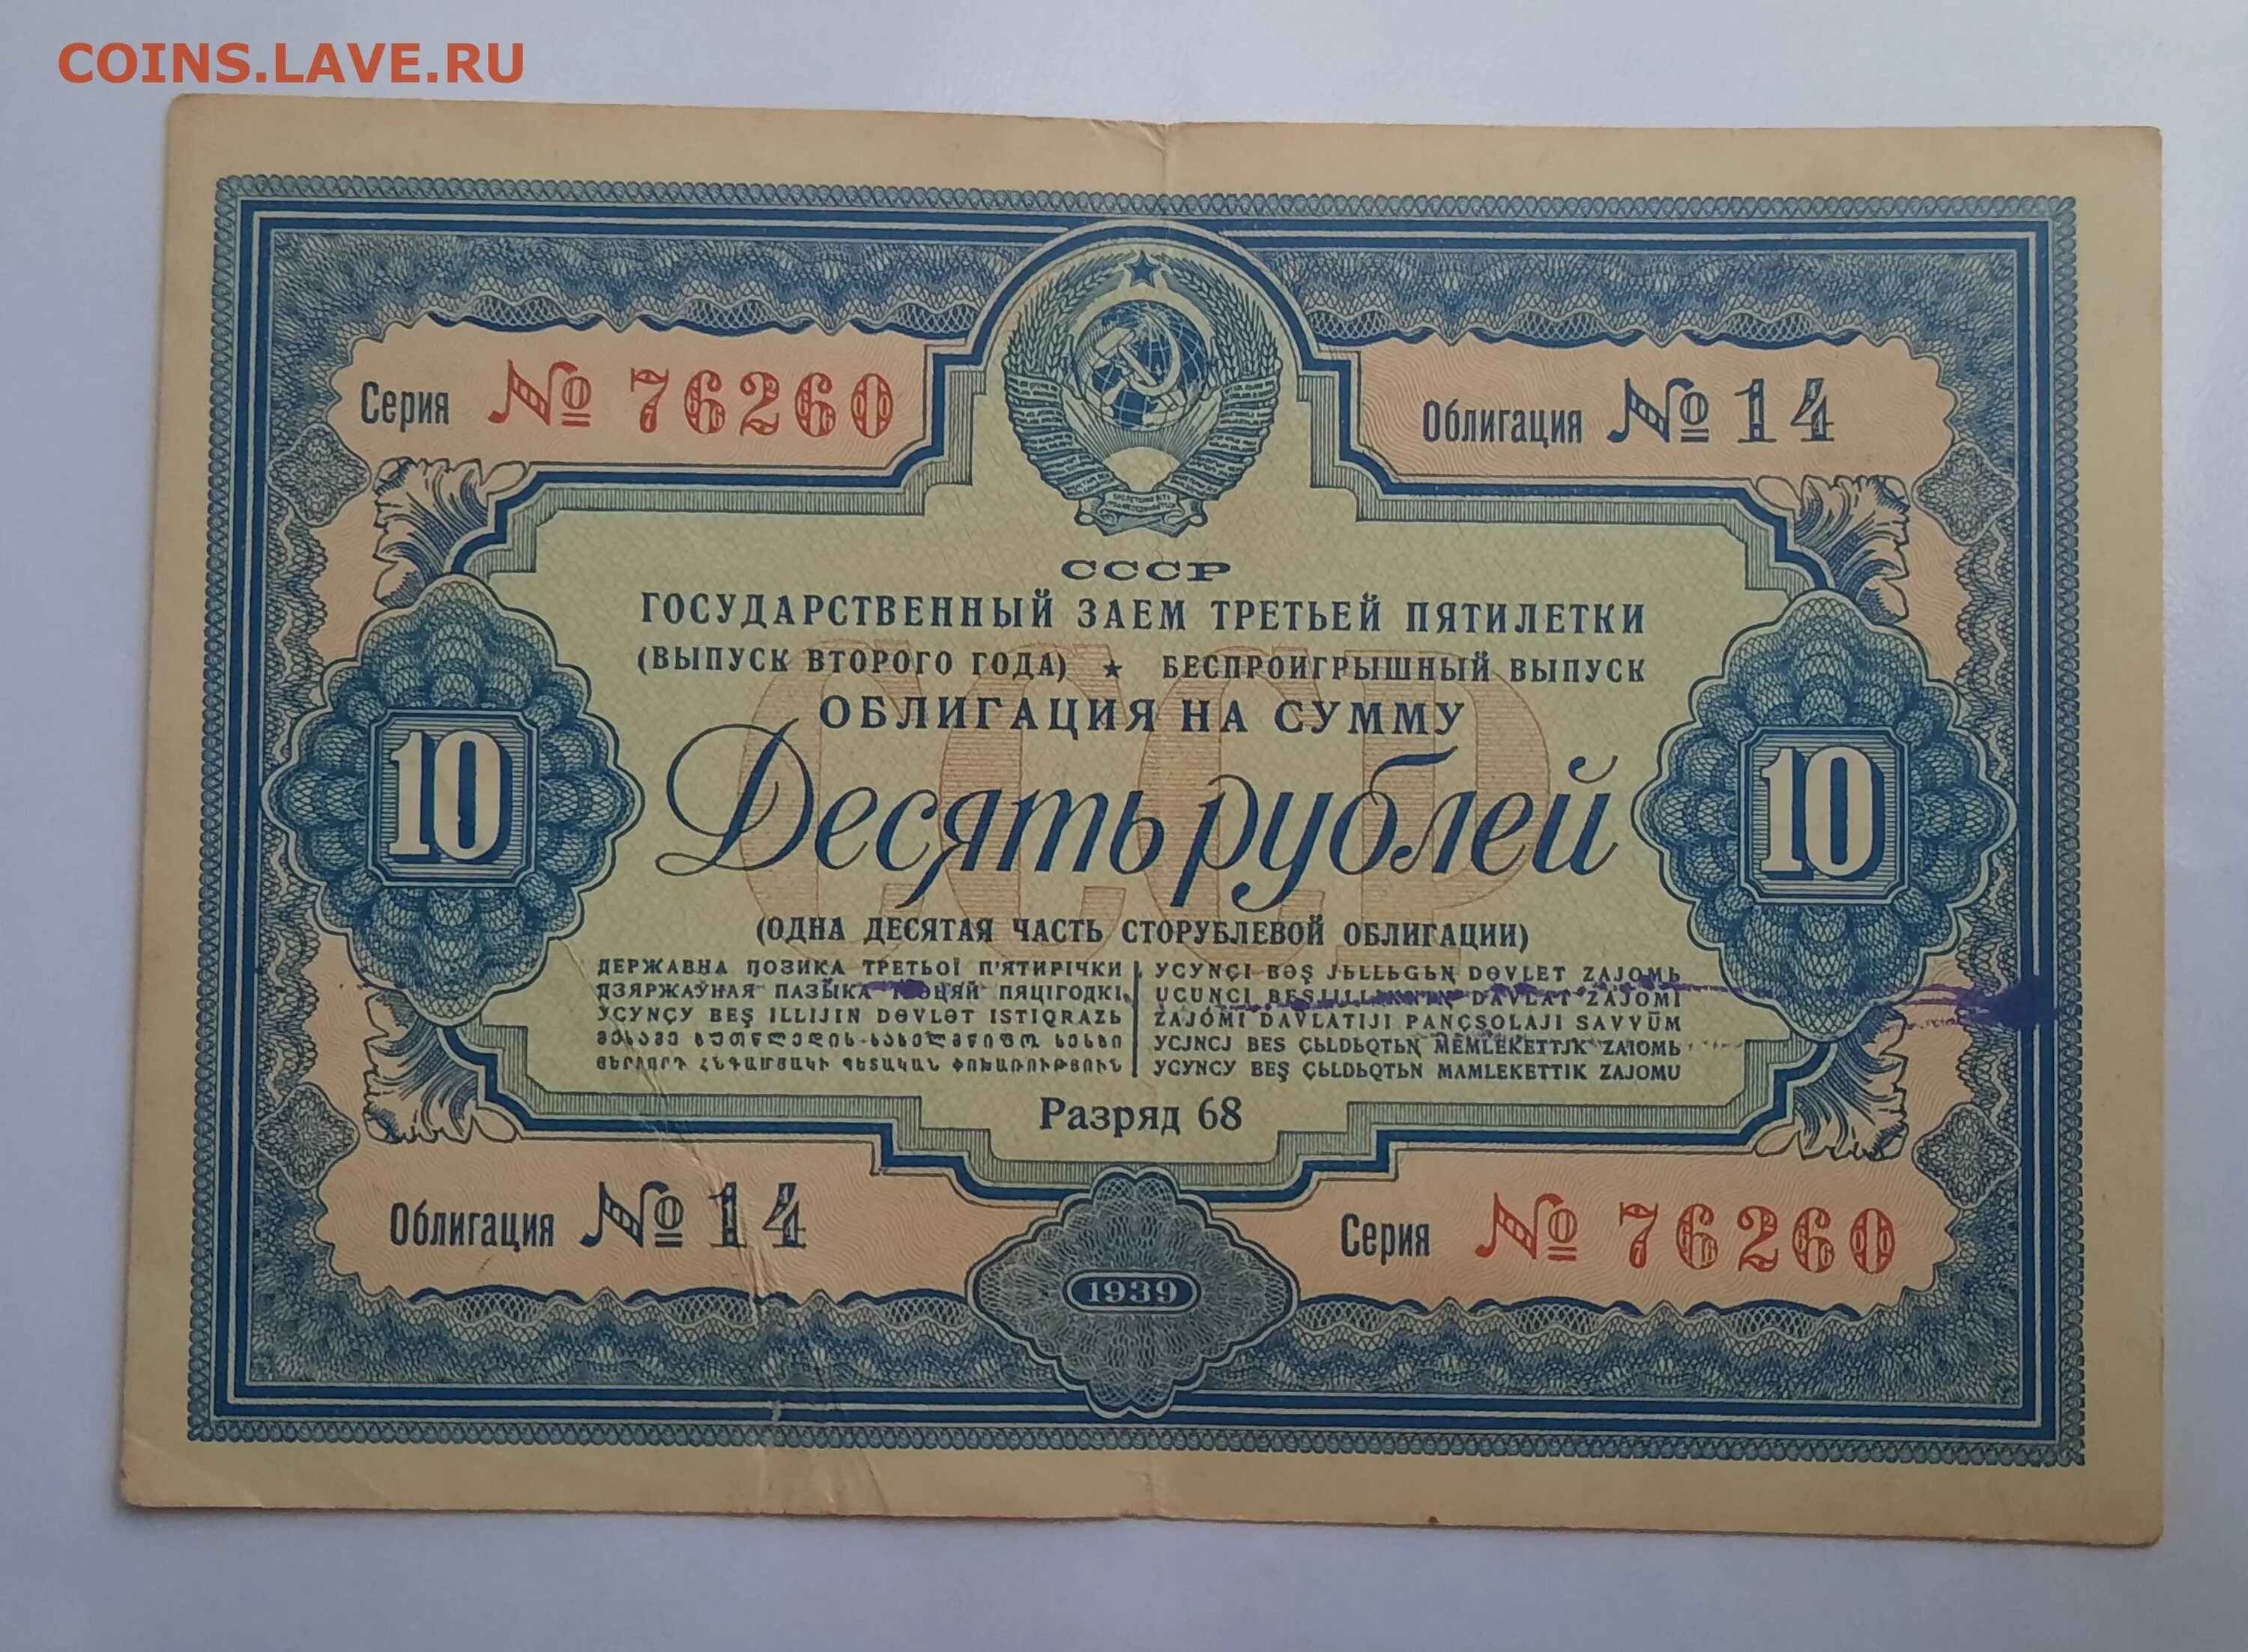 Облигация. 100 Рублей 1939. Bonds облигации. Государственный займ СССР.